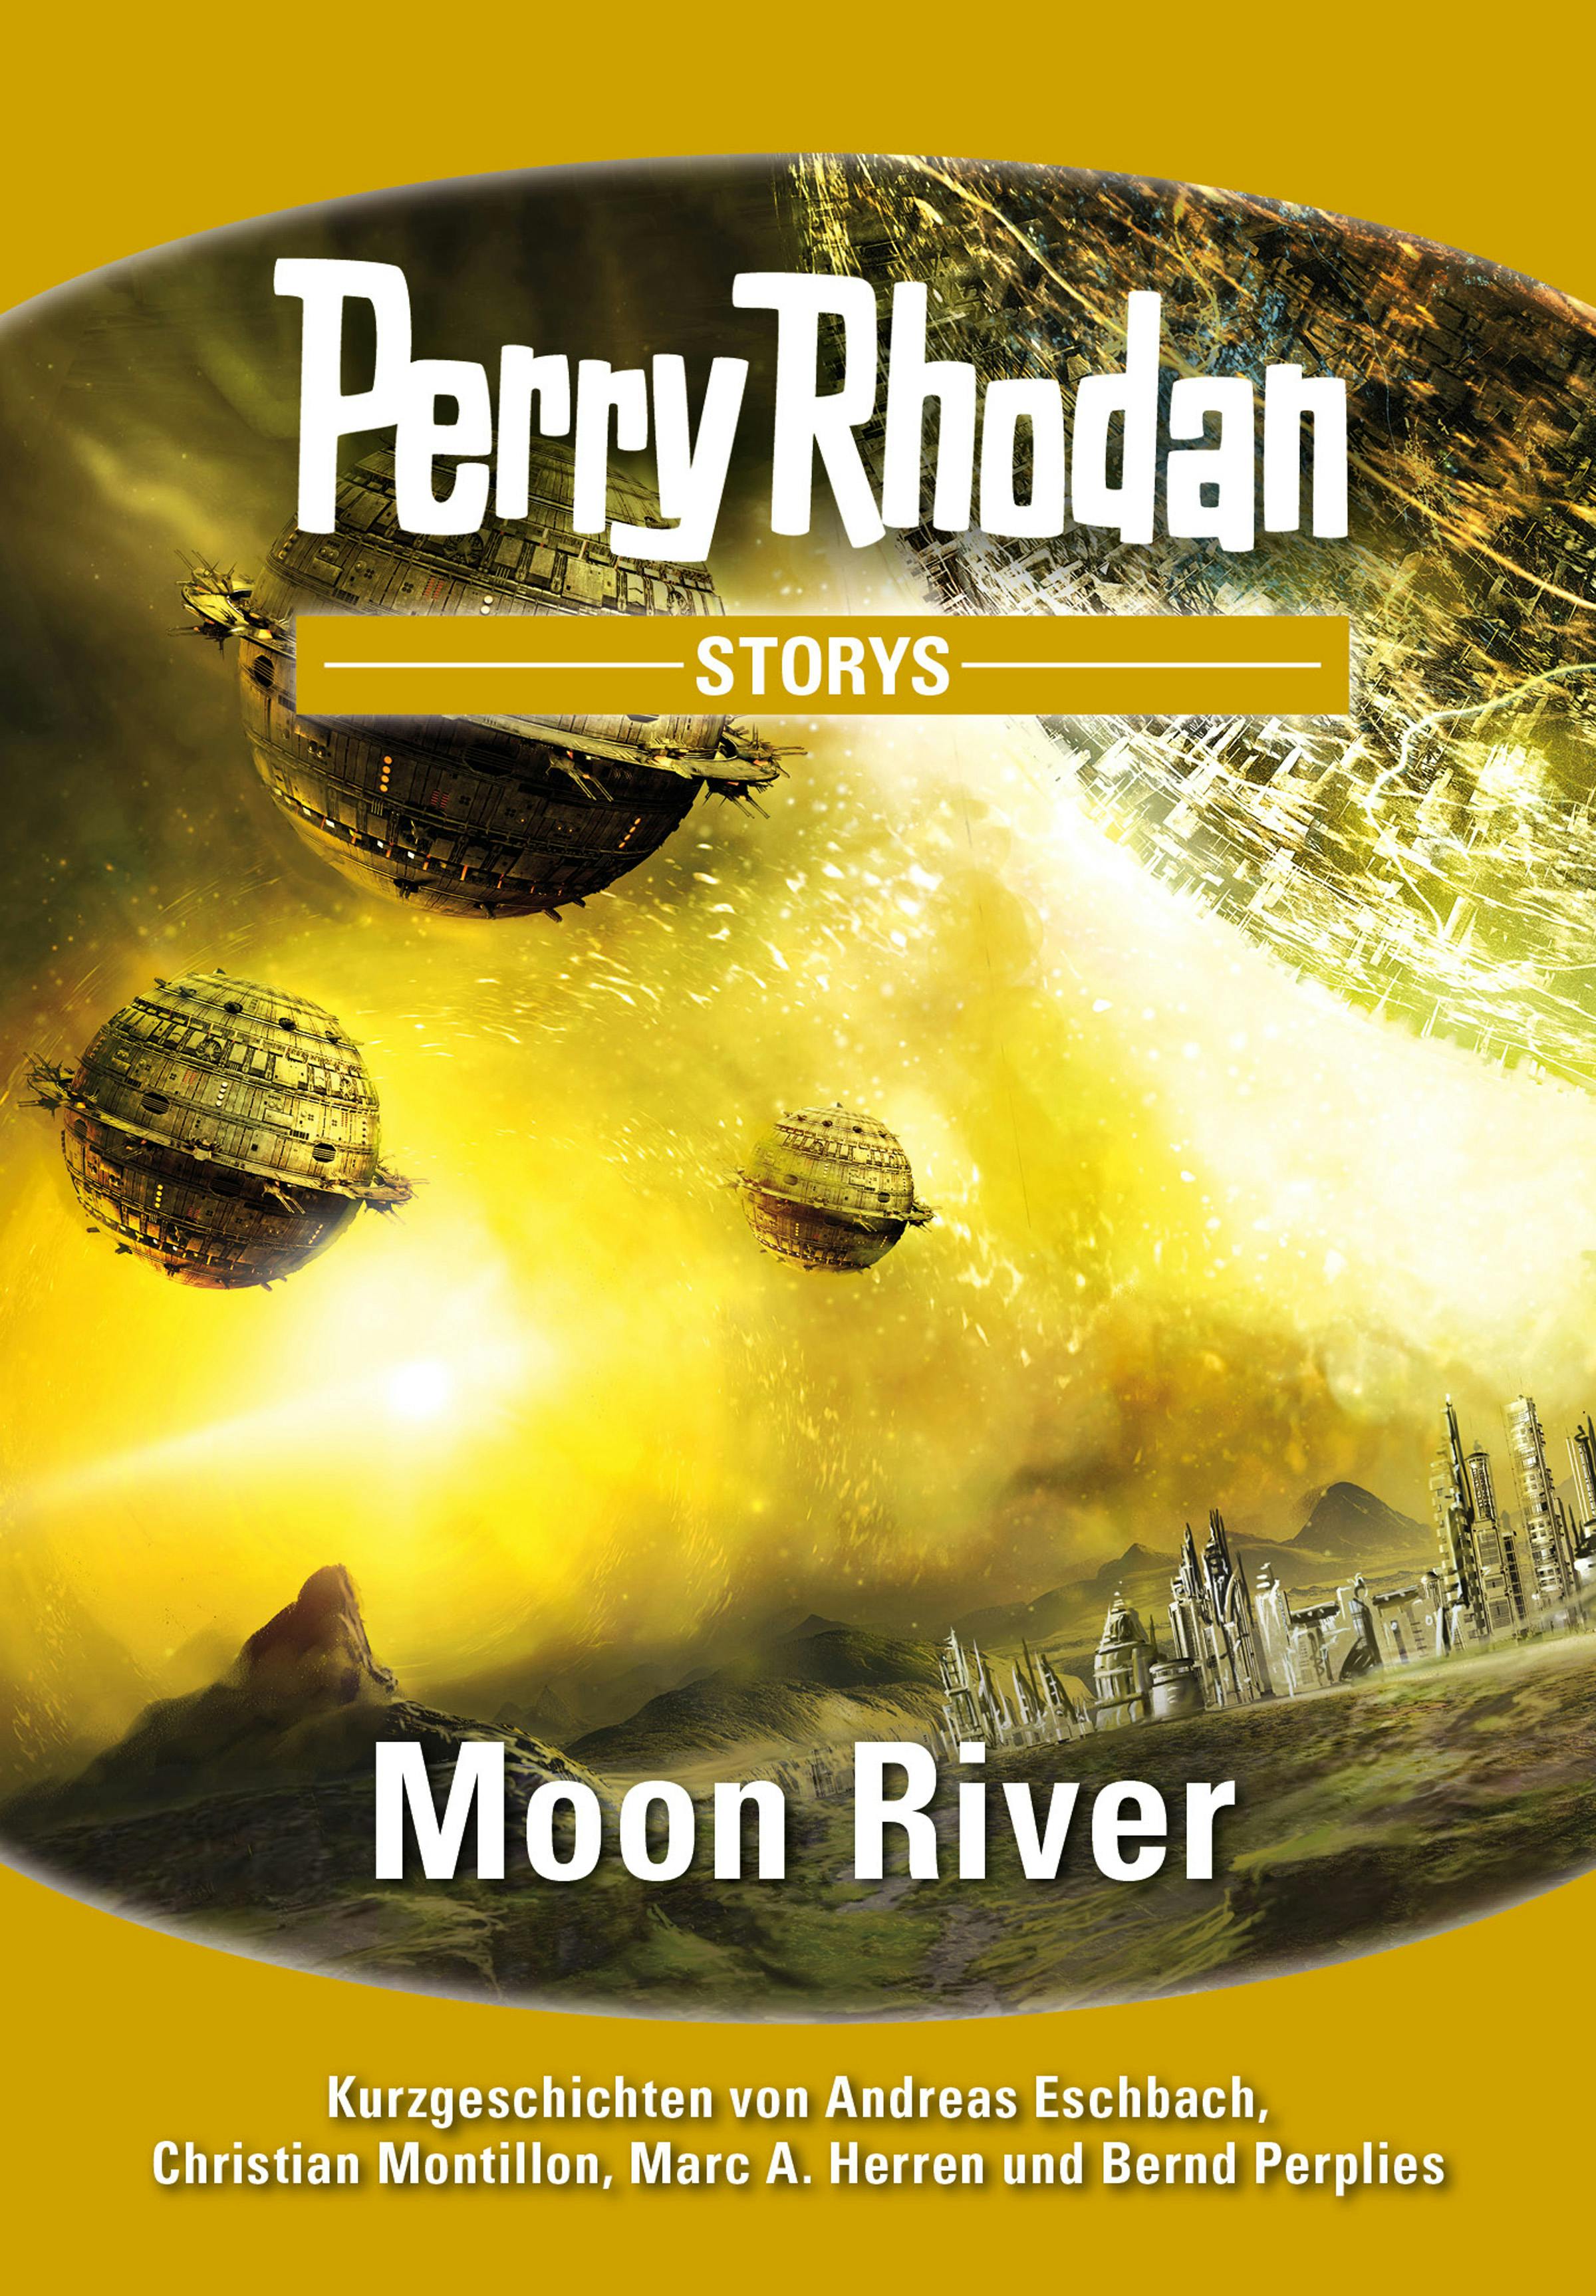 PERRY RHODAN-Storys: Moon River: Kurzgeschichten rund um PERRY RHODAN 2700 - Andreas Eschbach, Marc A. Herren, Christian Montillon, Bernd Perplies